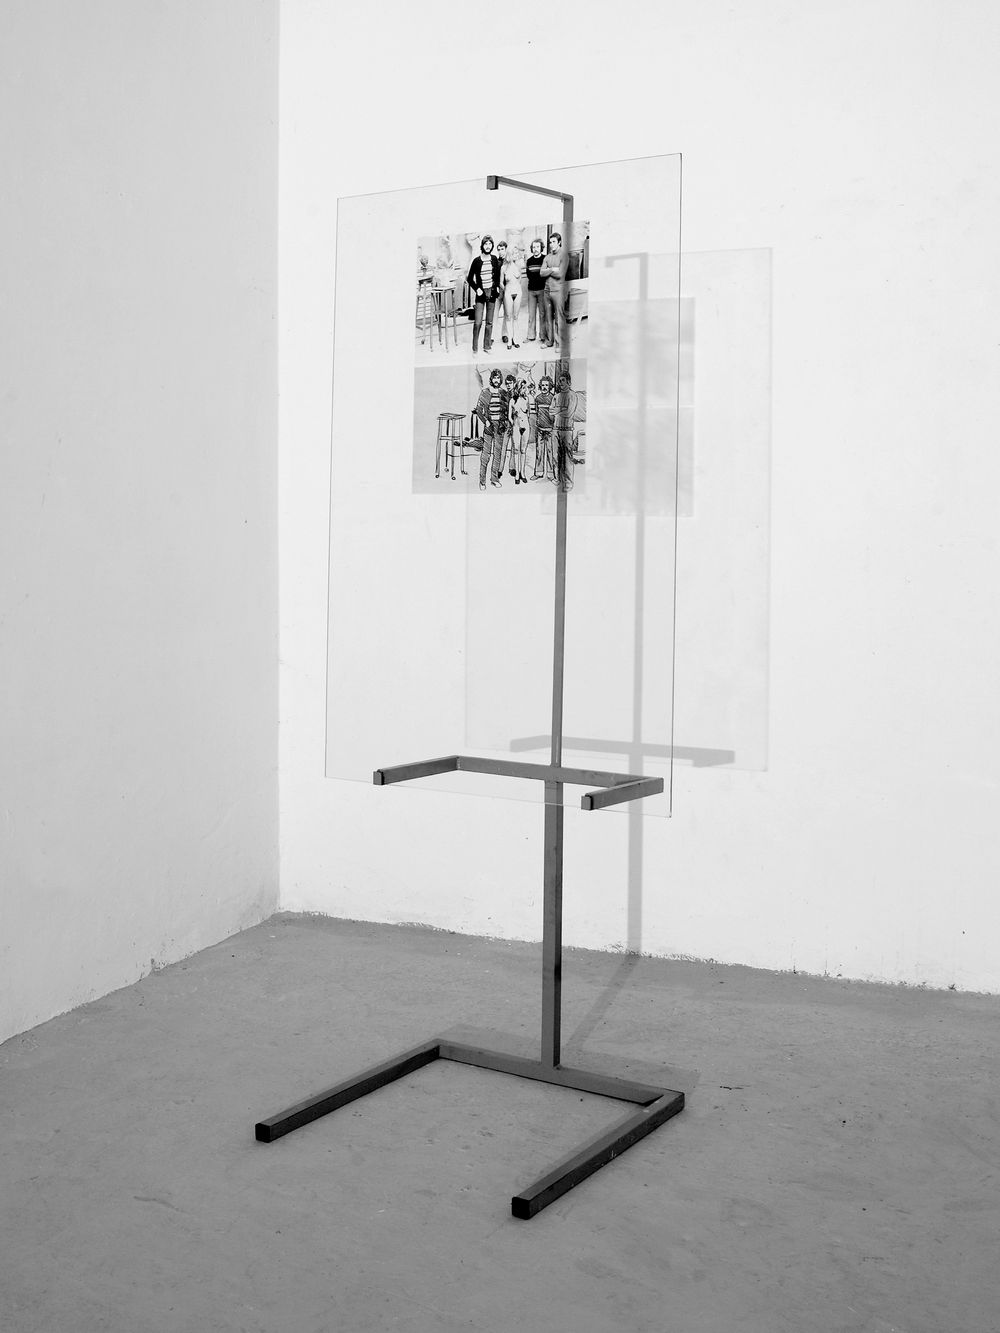 Trasparent vision - Modella con artisti - Alessandro Jasci